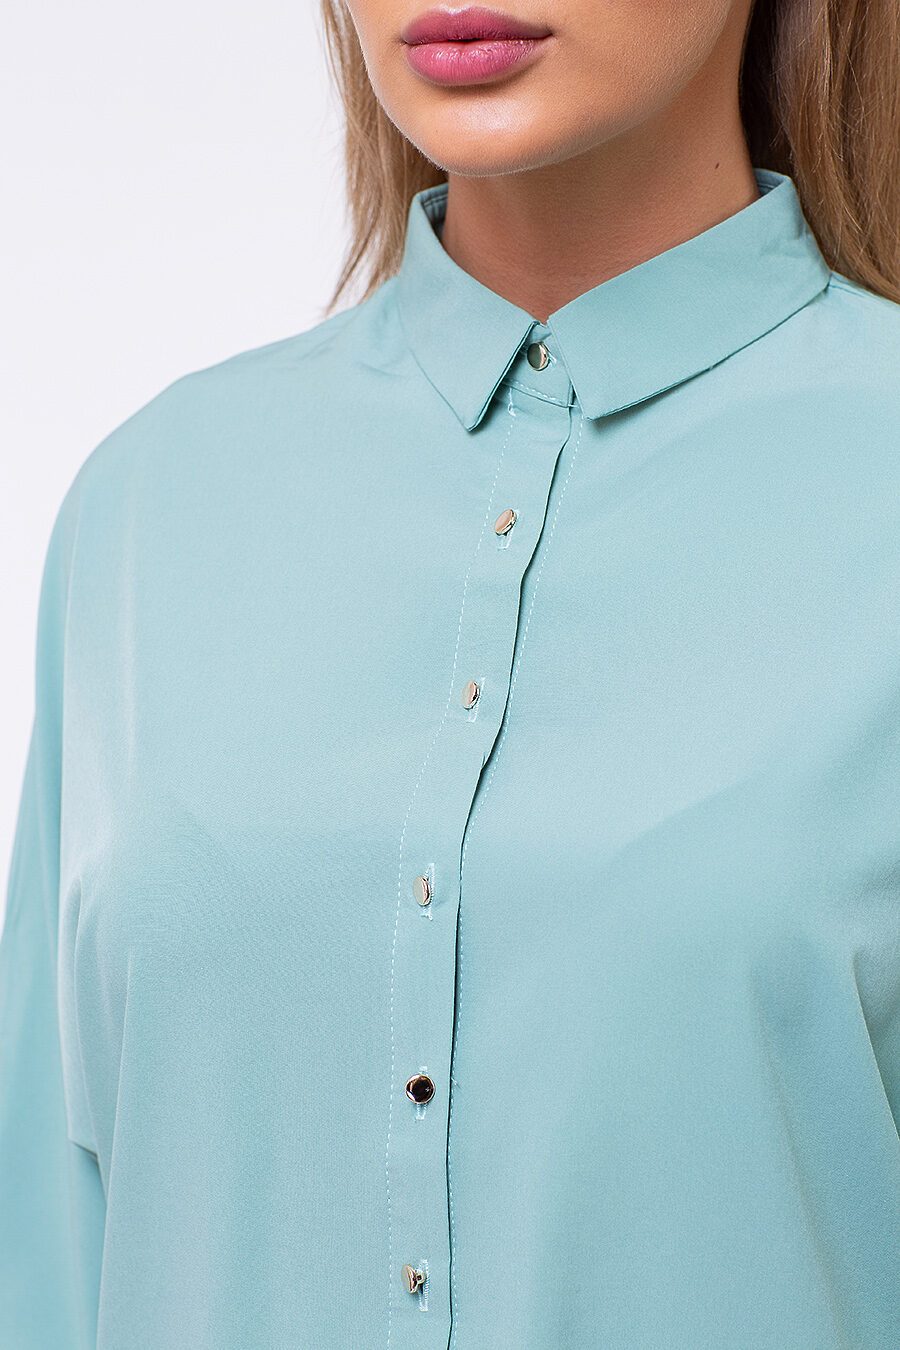 Блуза TUTACHI (125195), купить в Moyo.moda